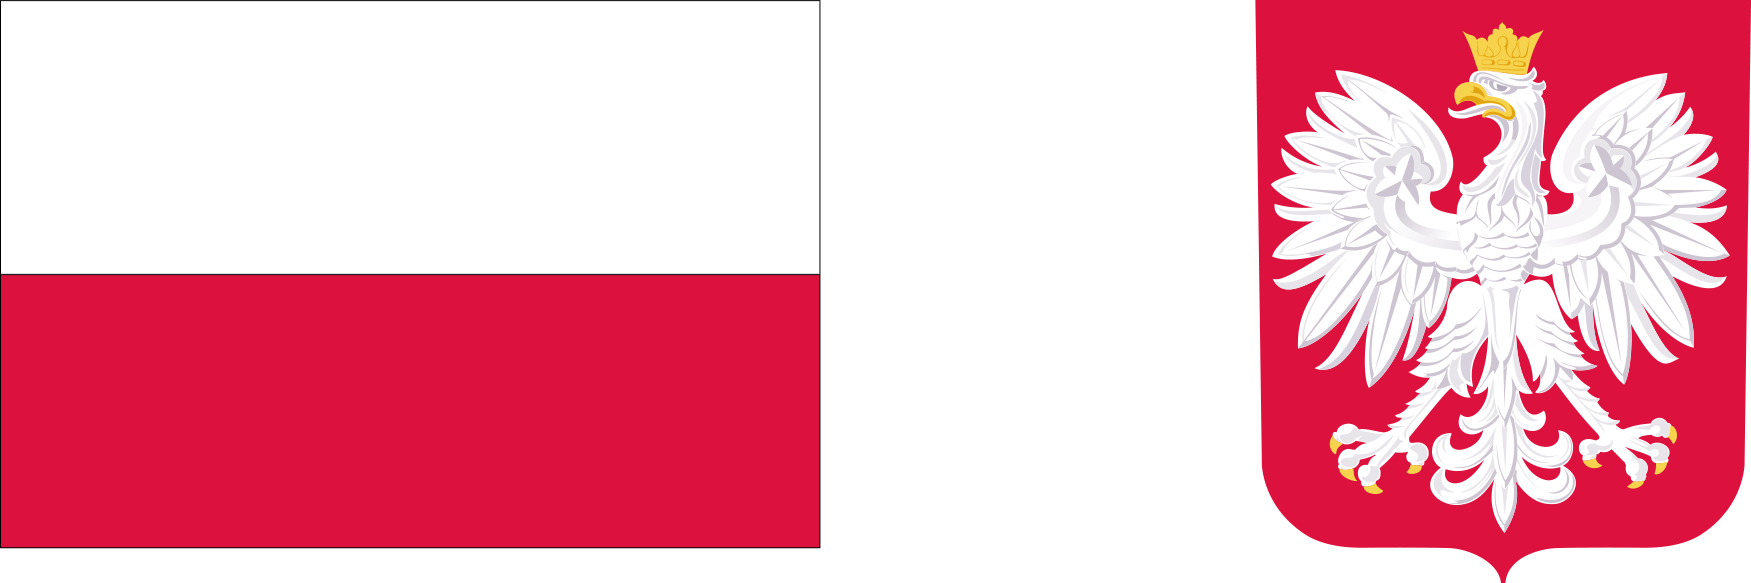 Od lewej: flaga Polski, po prawej godło Polski